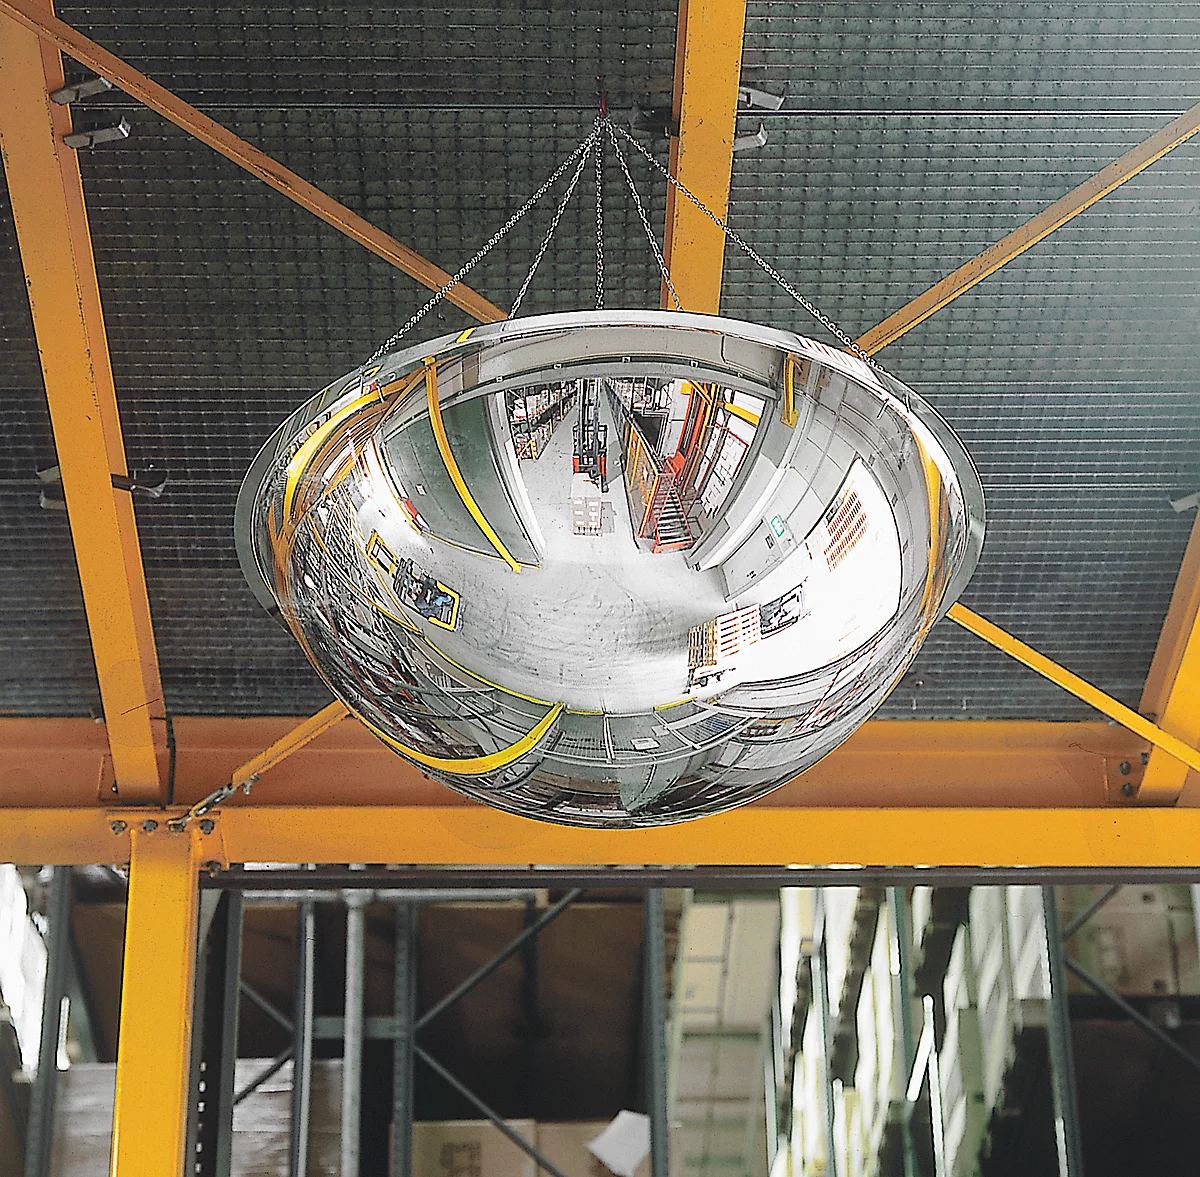 Espejo de observación, para montaje en el techo en interiores, Ø 900 mm, distancia de observación 5 m, semiesfera, vista panorámica de 360°, vidrio acrílico, plata